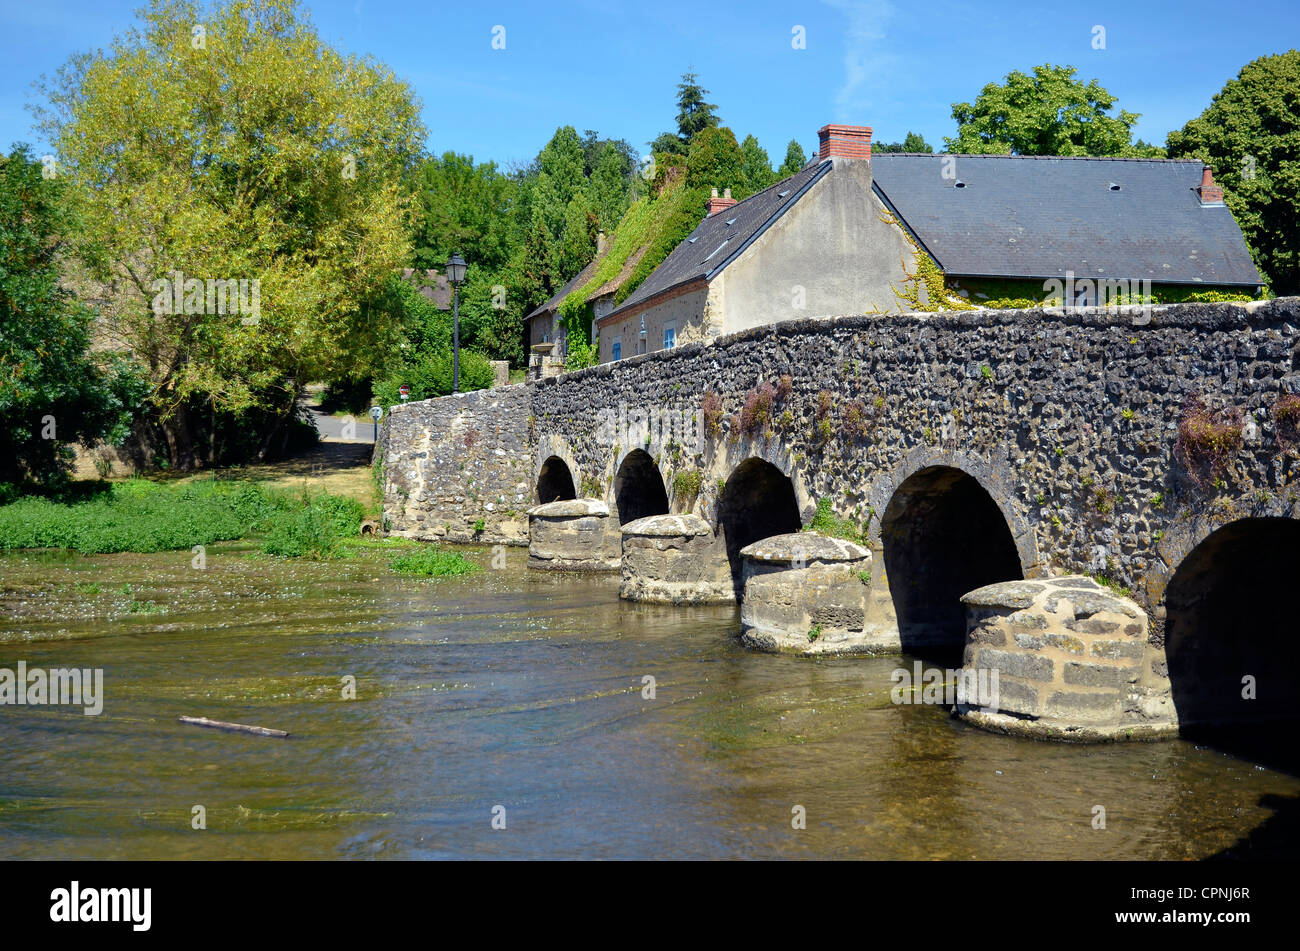 Alte Brücke am Vègre River bei Asnières Sur Vègre in Frankreich, Gemeinde der Region Pays De La Loire im Nordwesten Frankreichs Stockfoto